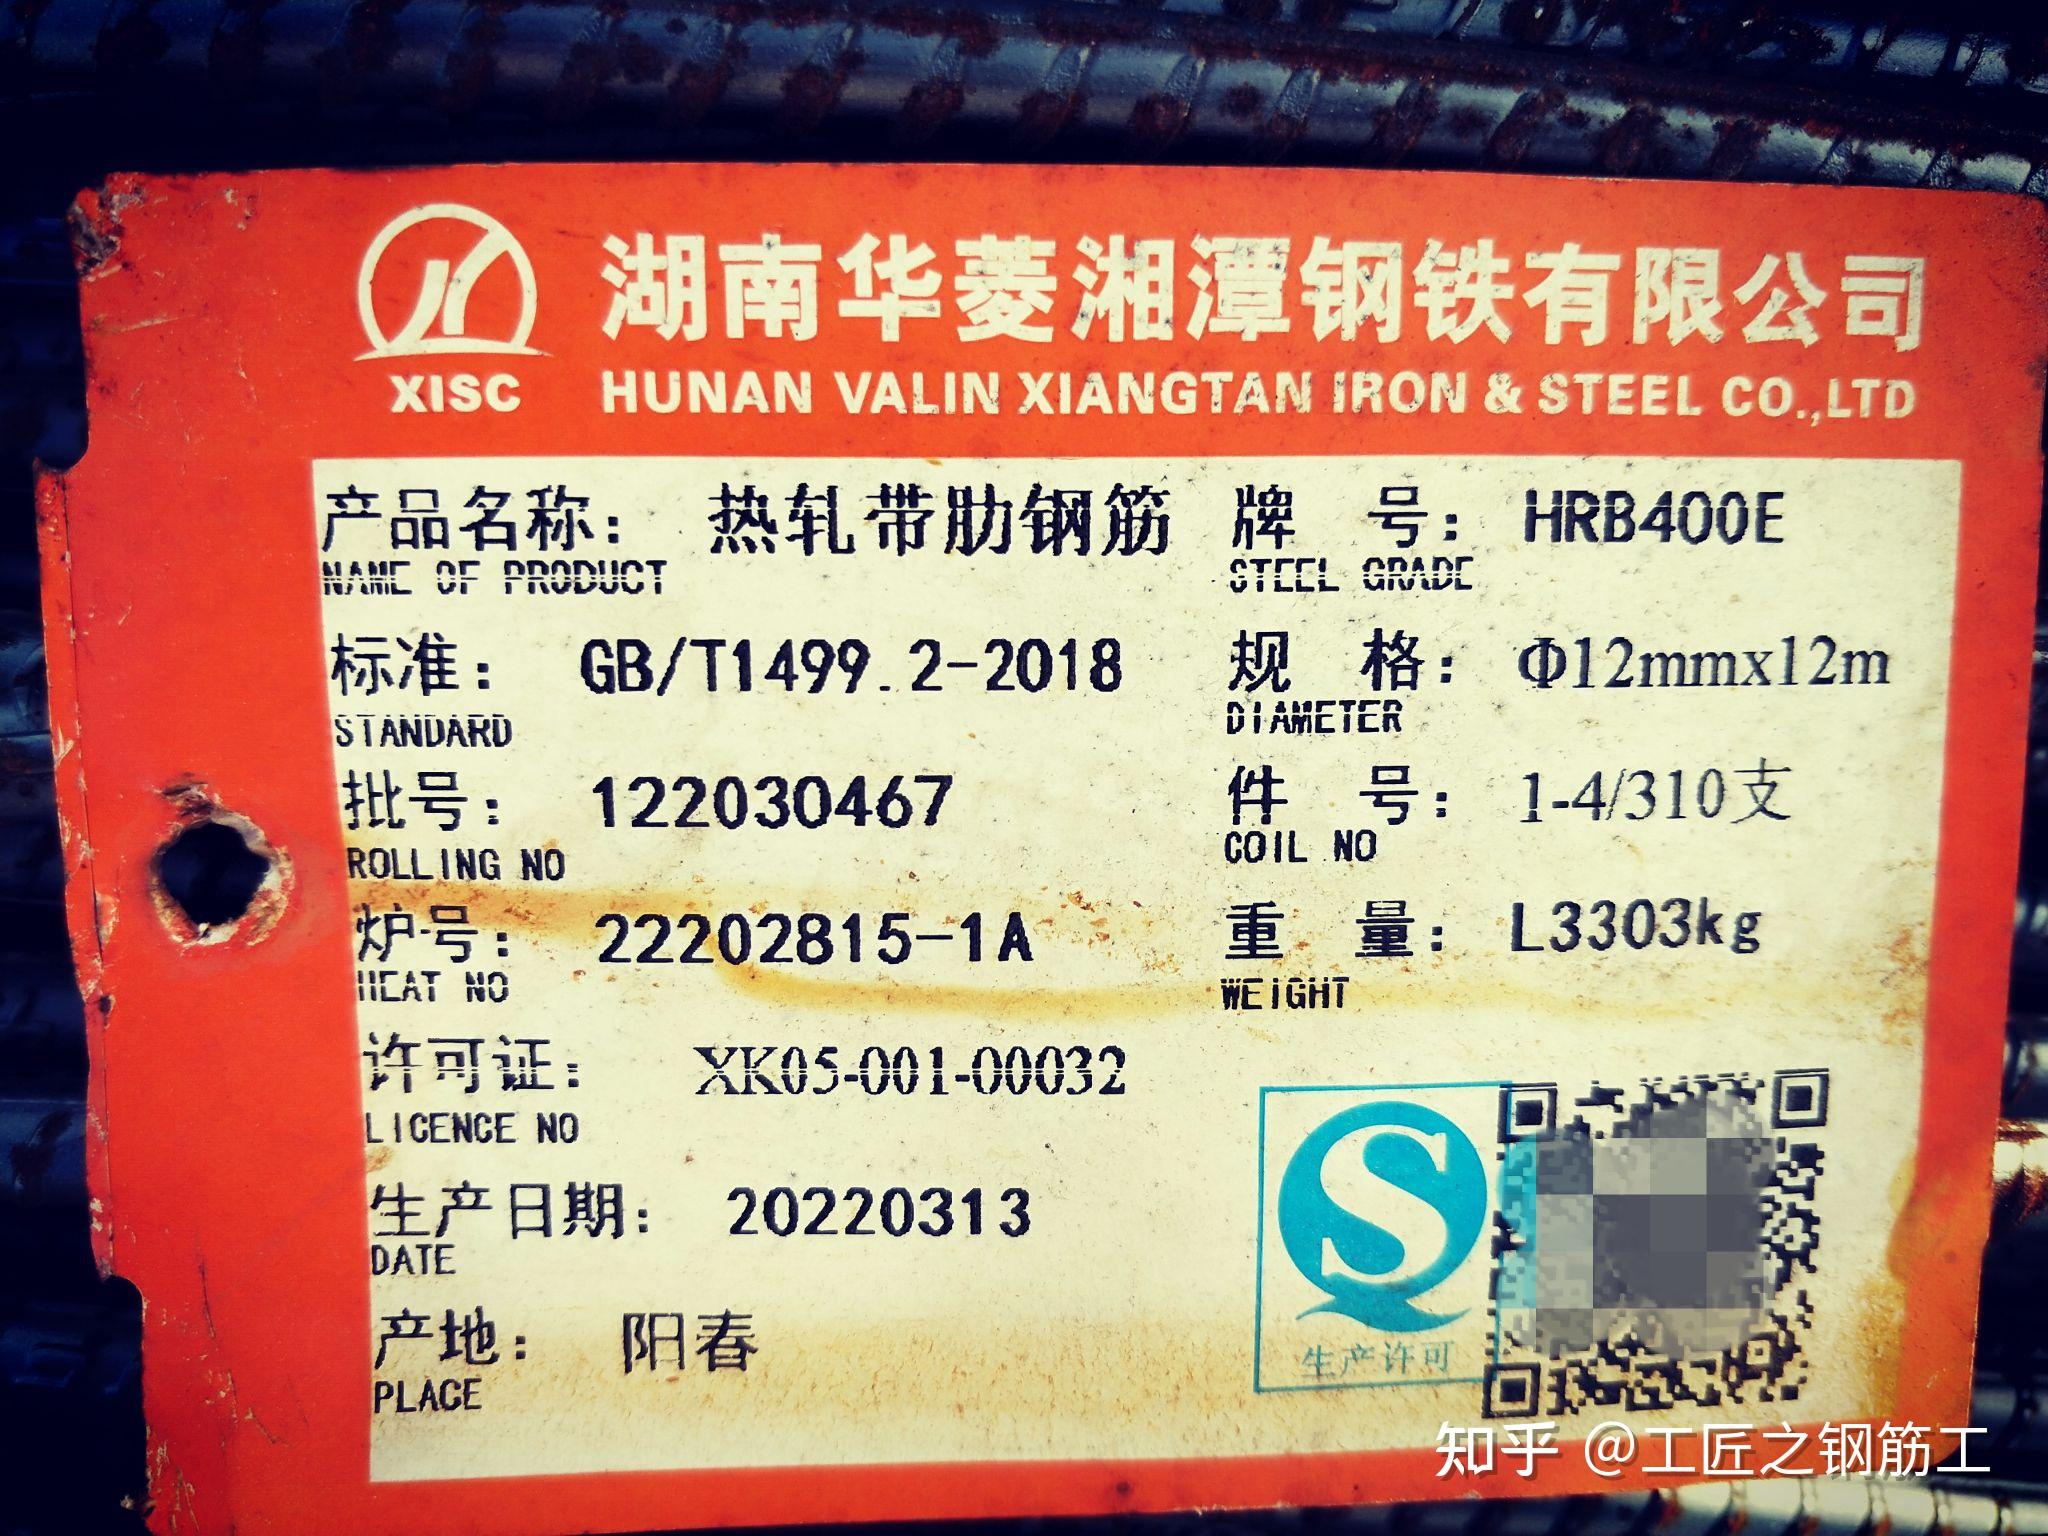 湖南华菱湘潭钢铁有限公司(简称湘钢)位于湖南省湘潭市岳塘区,是国内